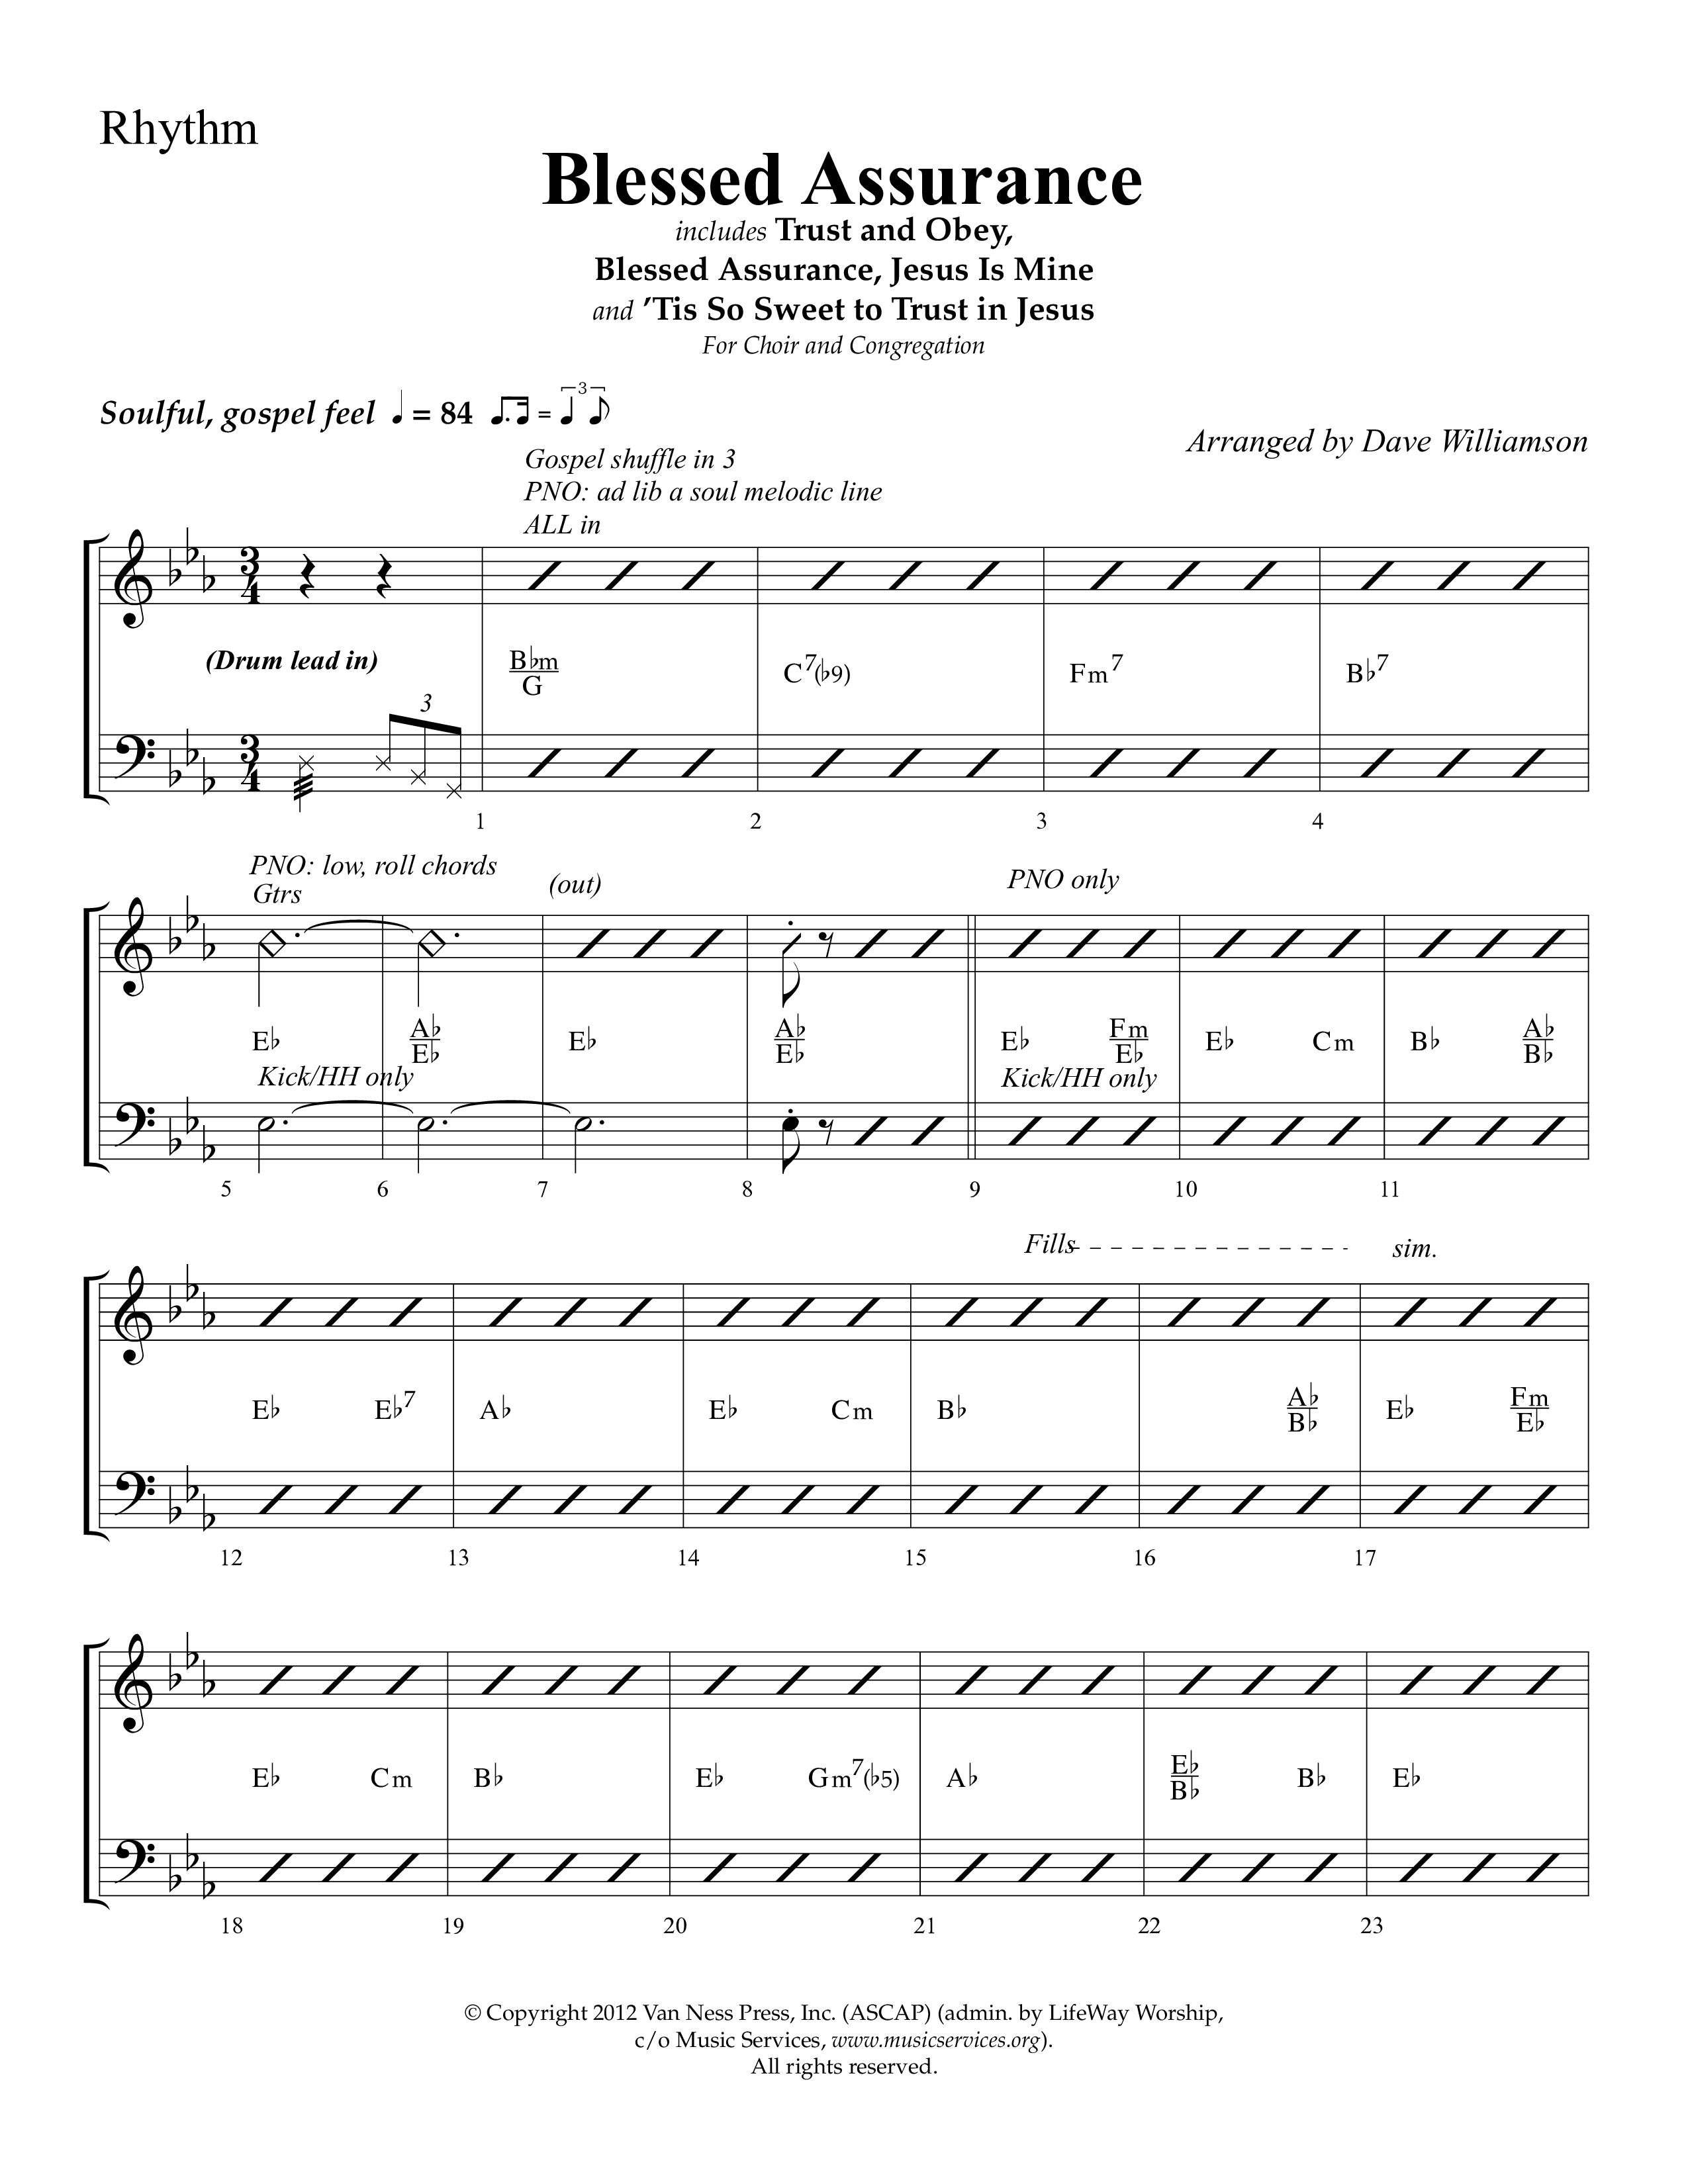 Blessed Assurance (Choral Anthem SATB) Lead Melody & Rhythm (Lifeway Choral / Arr. Dave Williamson)